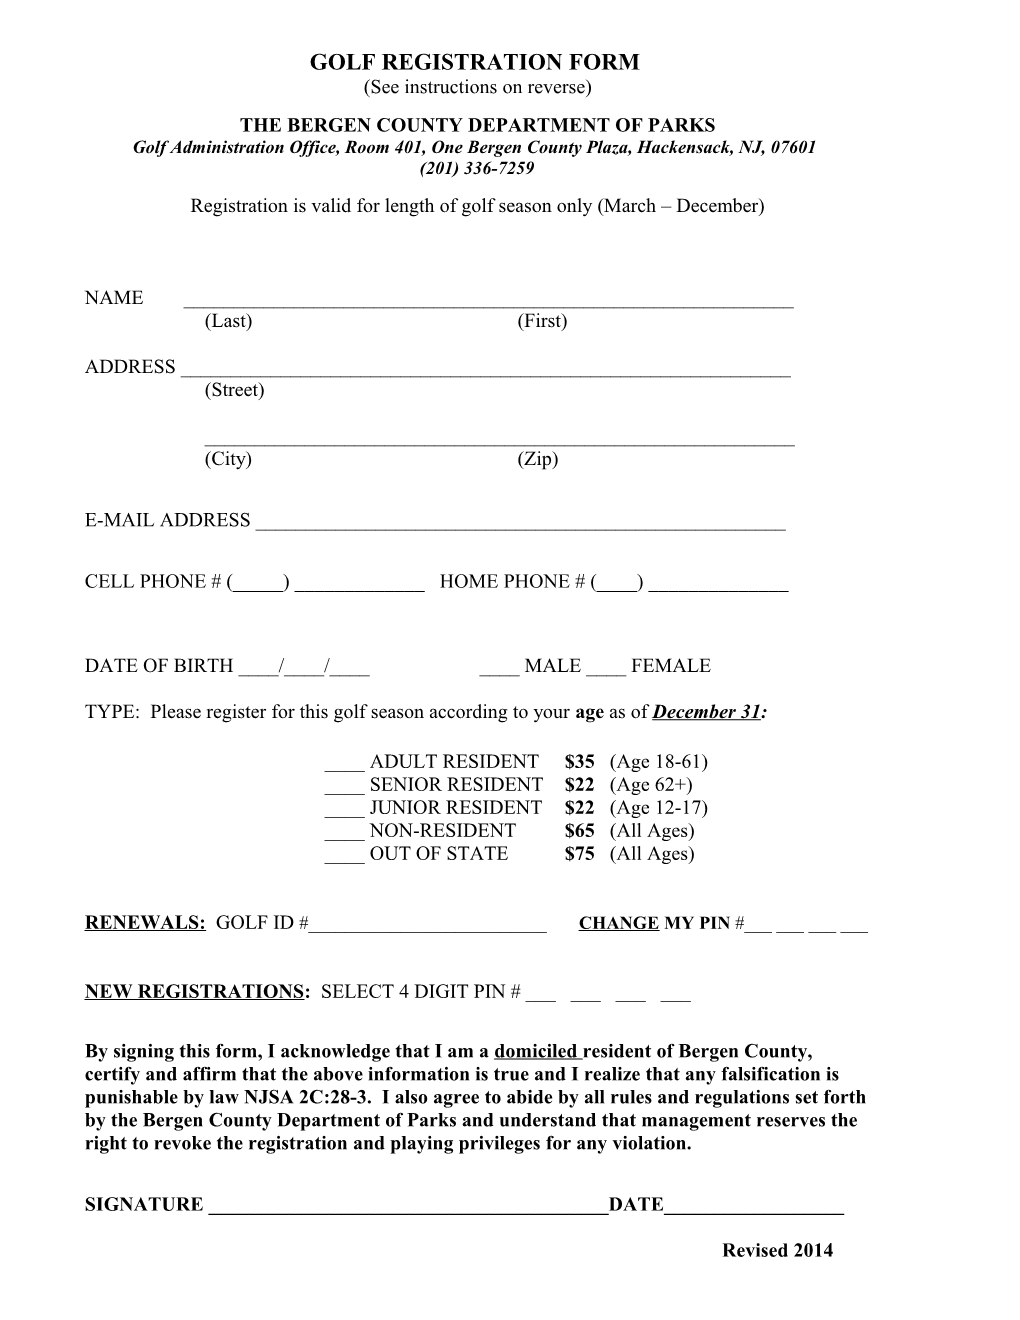 Registration Renewal Form